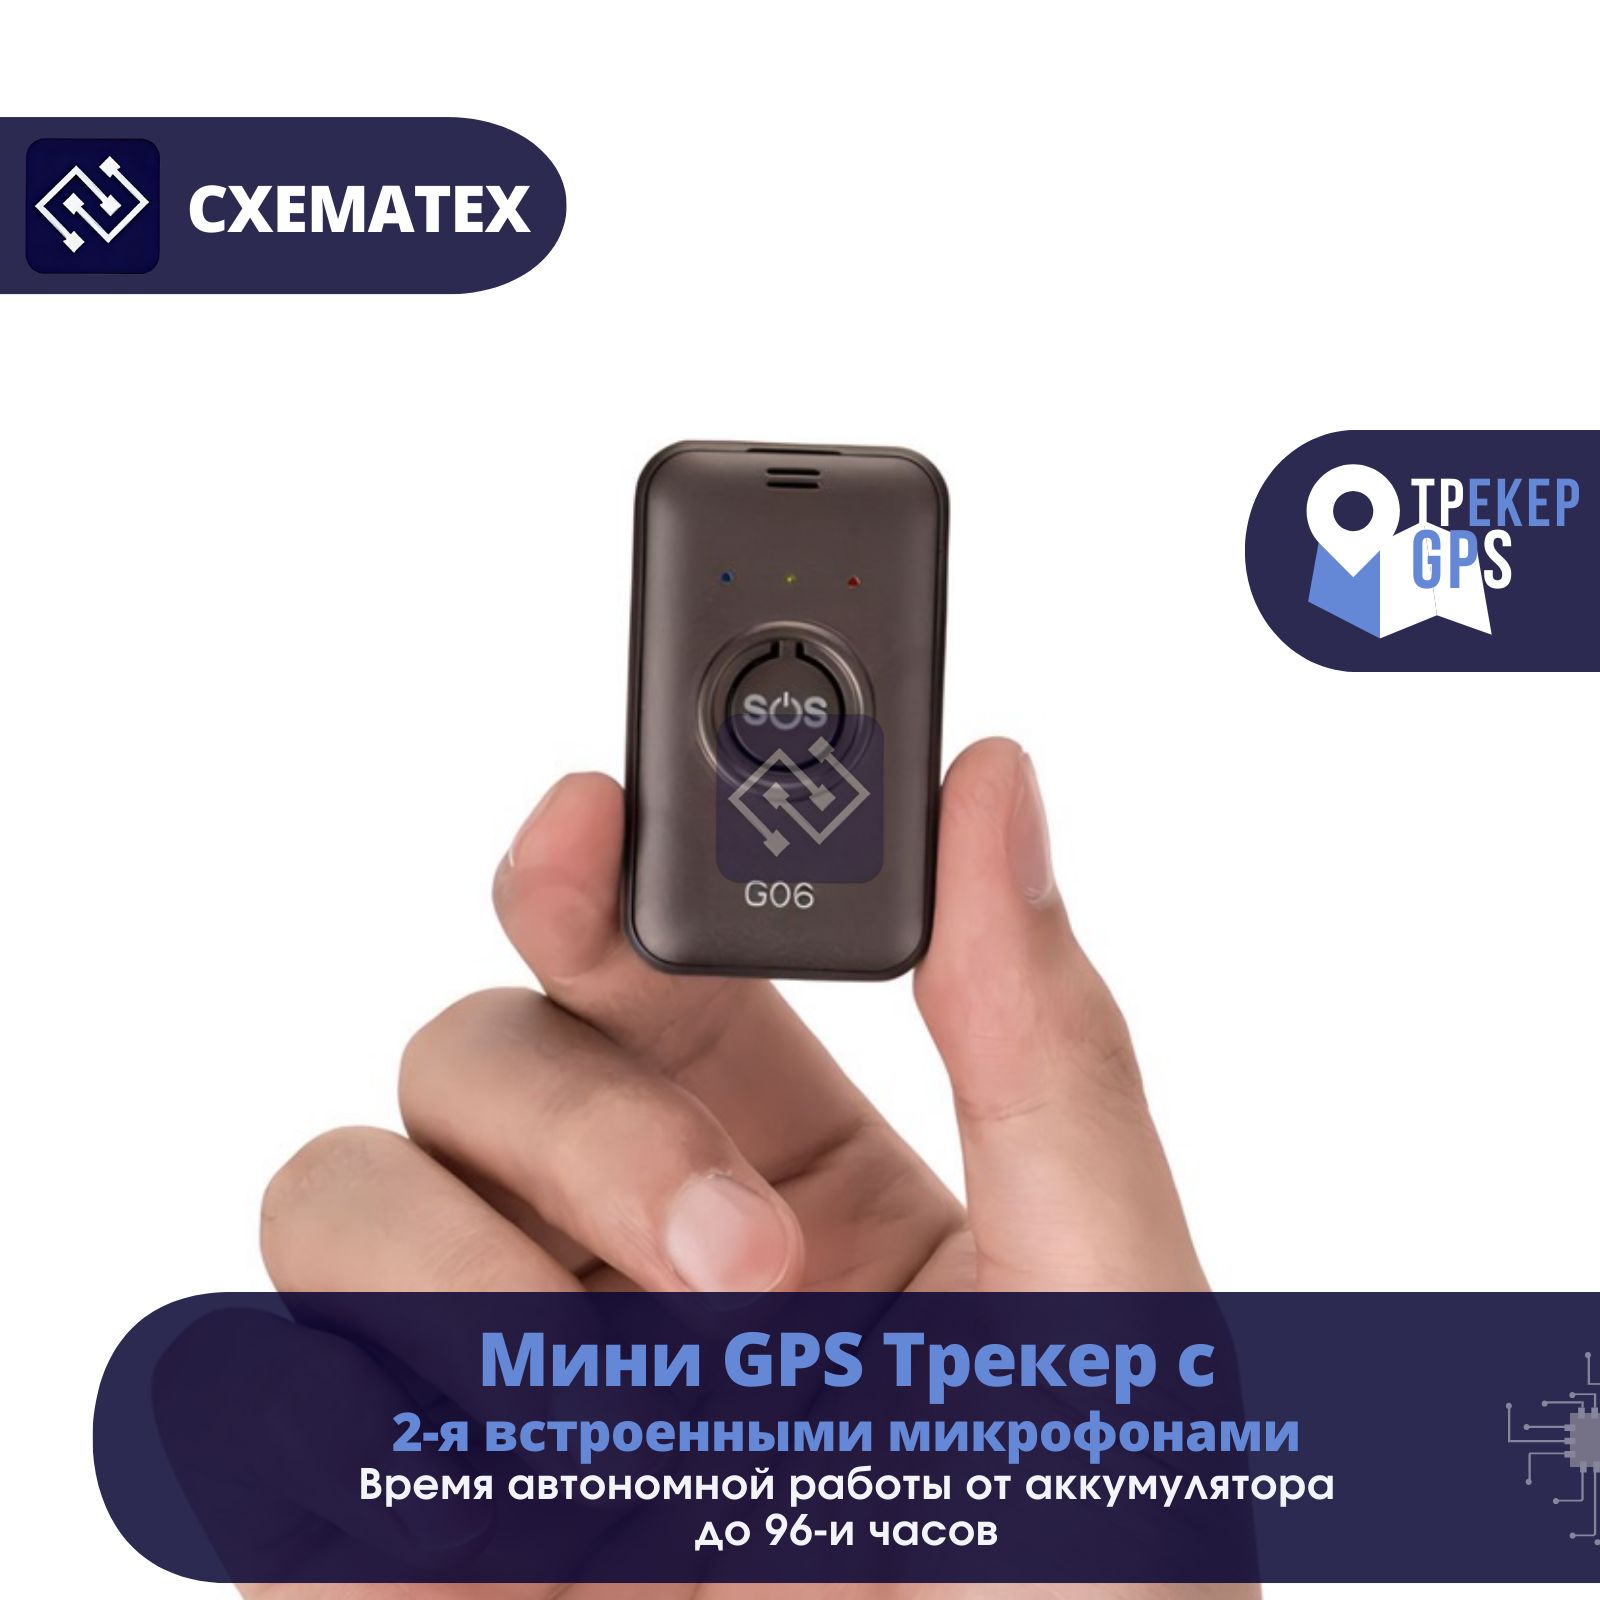 МиниGSM/GPSТрекермаякGT06Sсмикрофономиприложениемнателефон